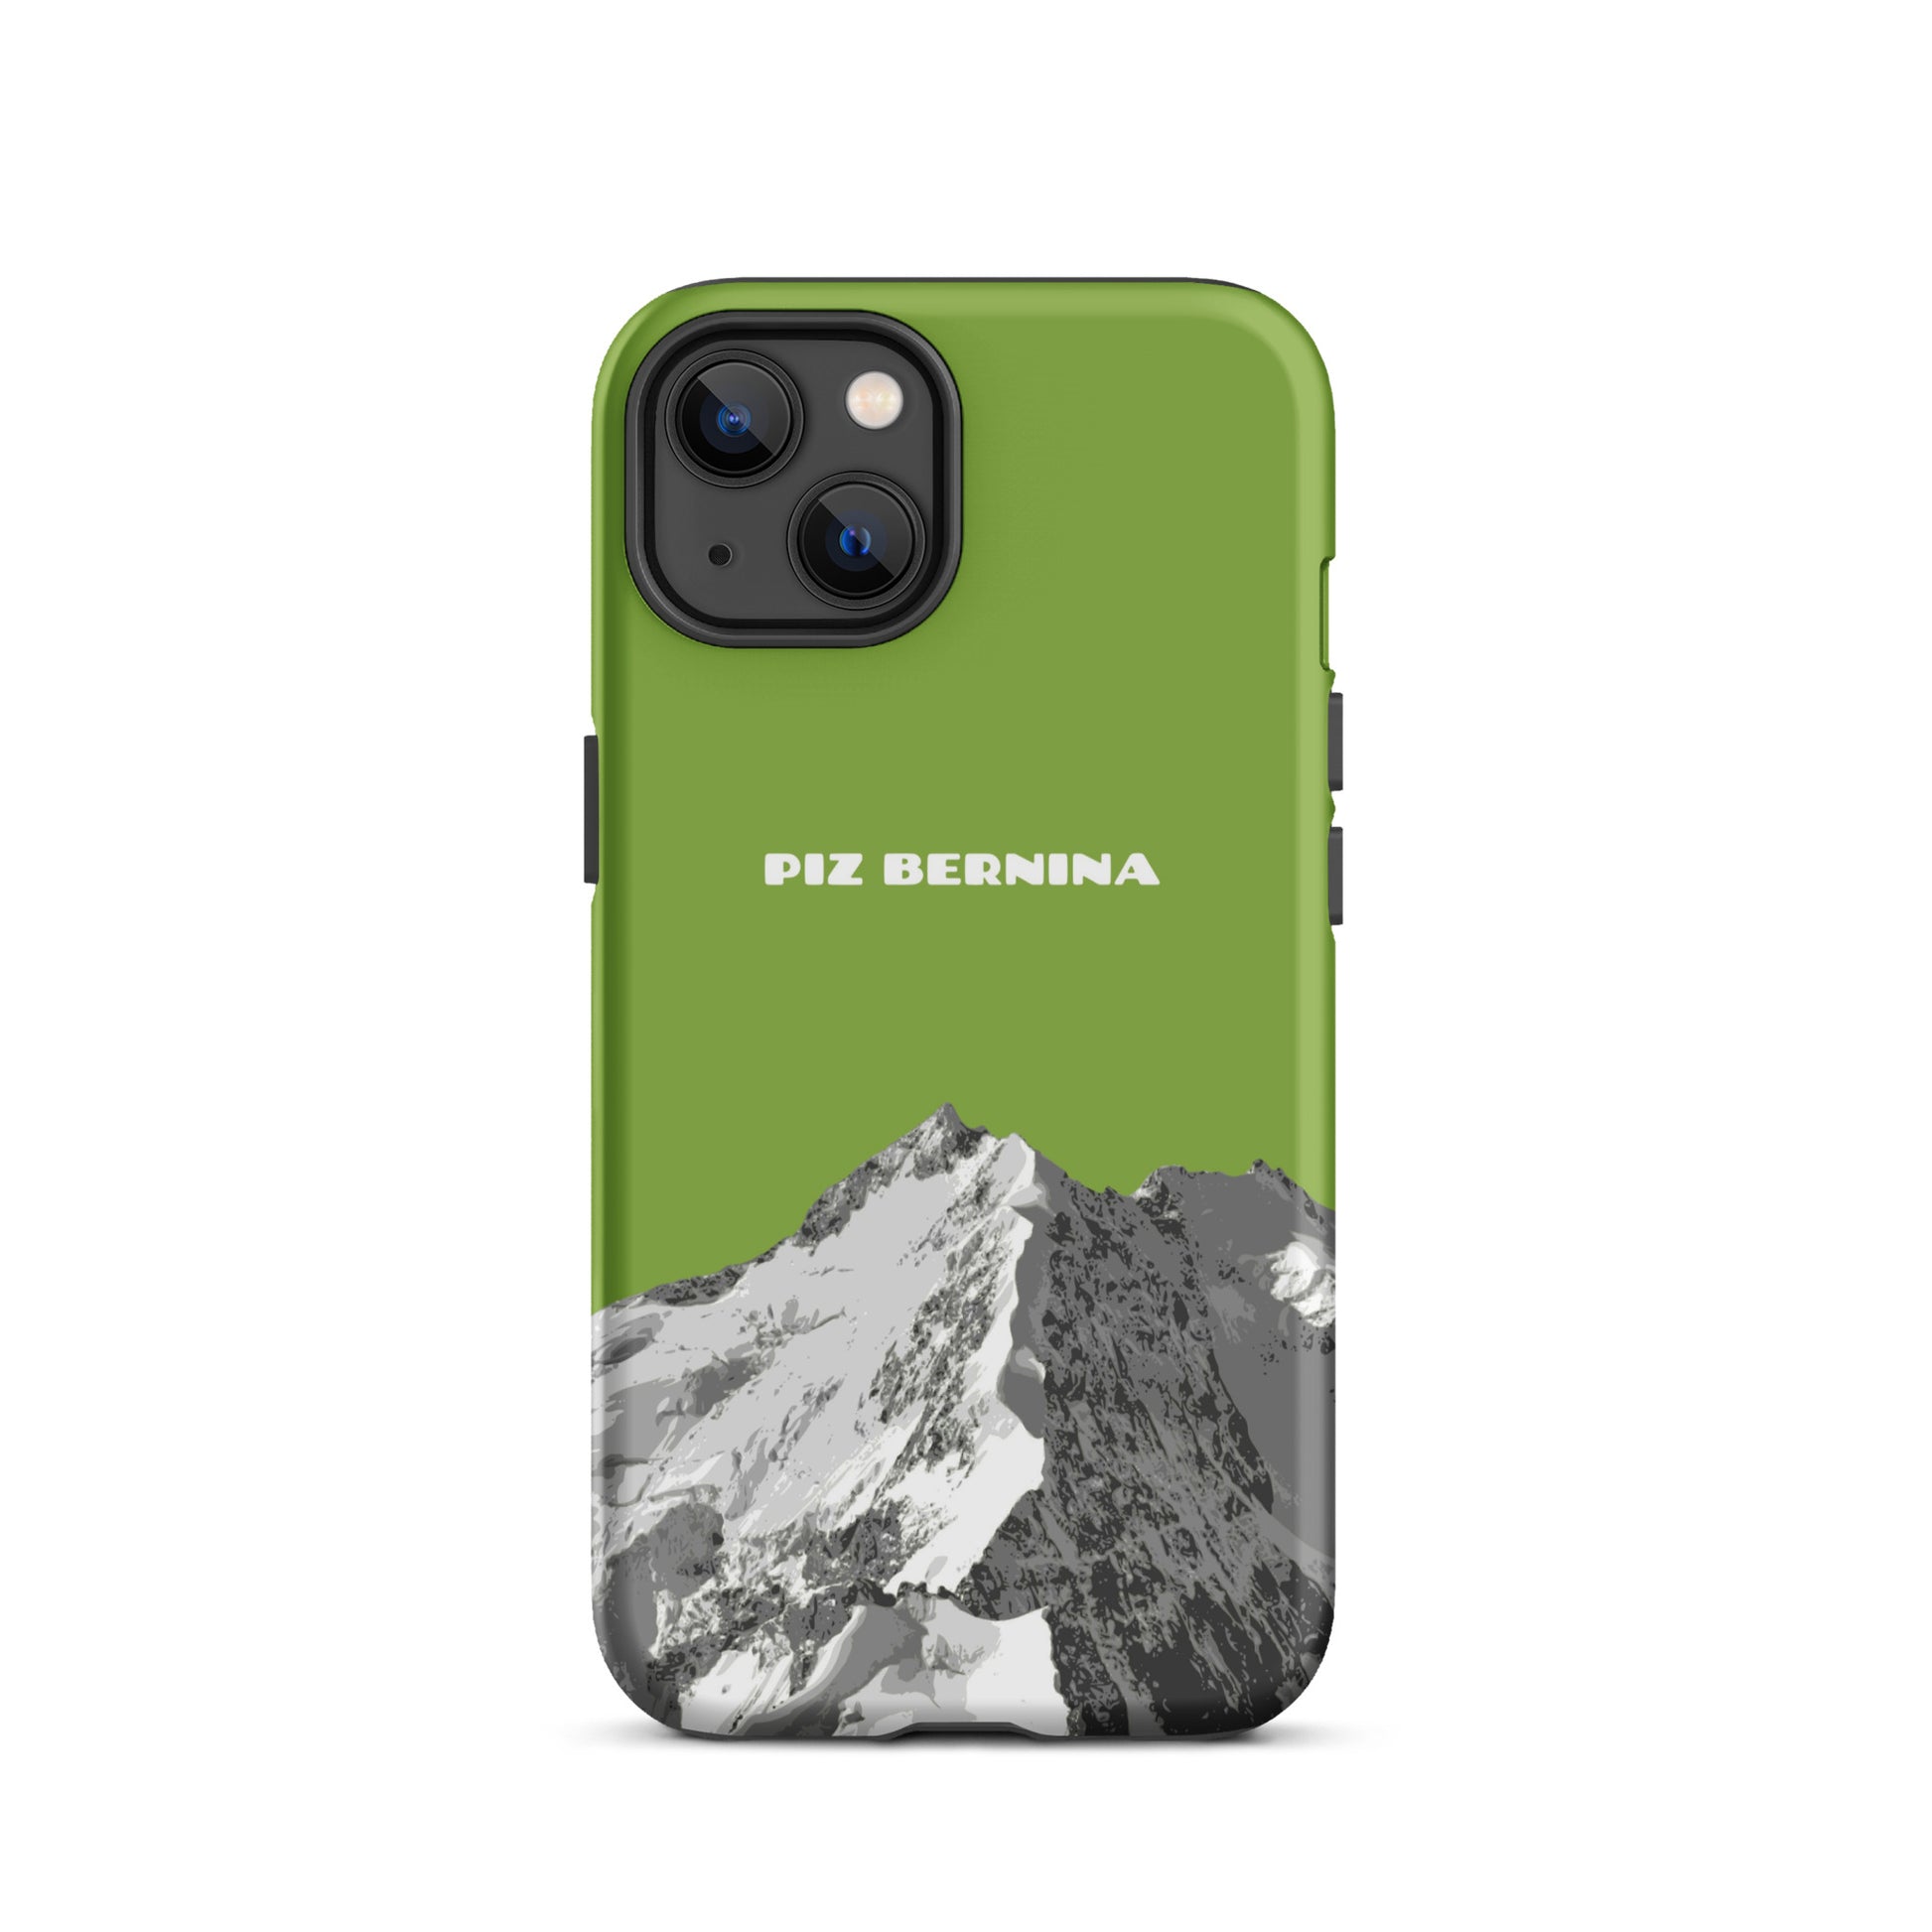 Hülle für das iPhone 13 von Apple in der Farbe Gelbgrün, dass den Piz Bernina in Graubünden zeigt.